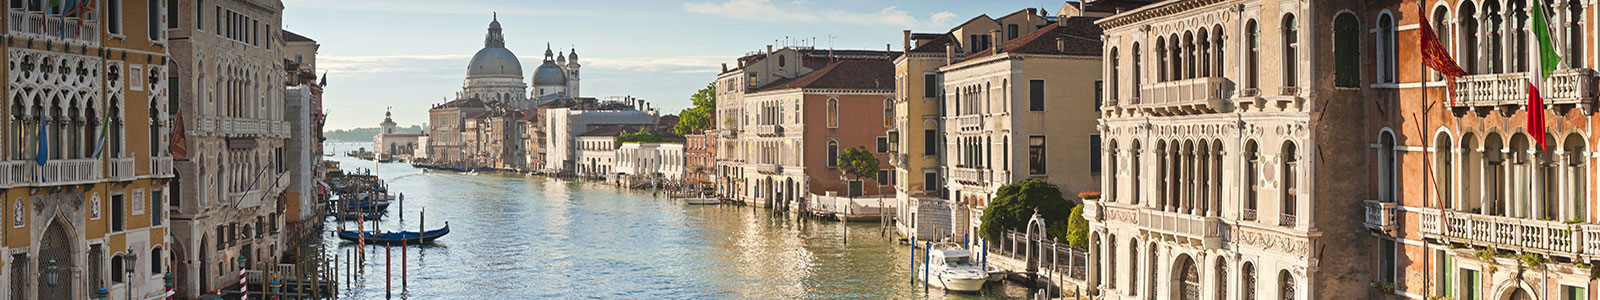 №1747 - Канал в Венеции